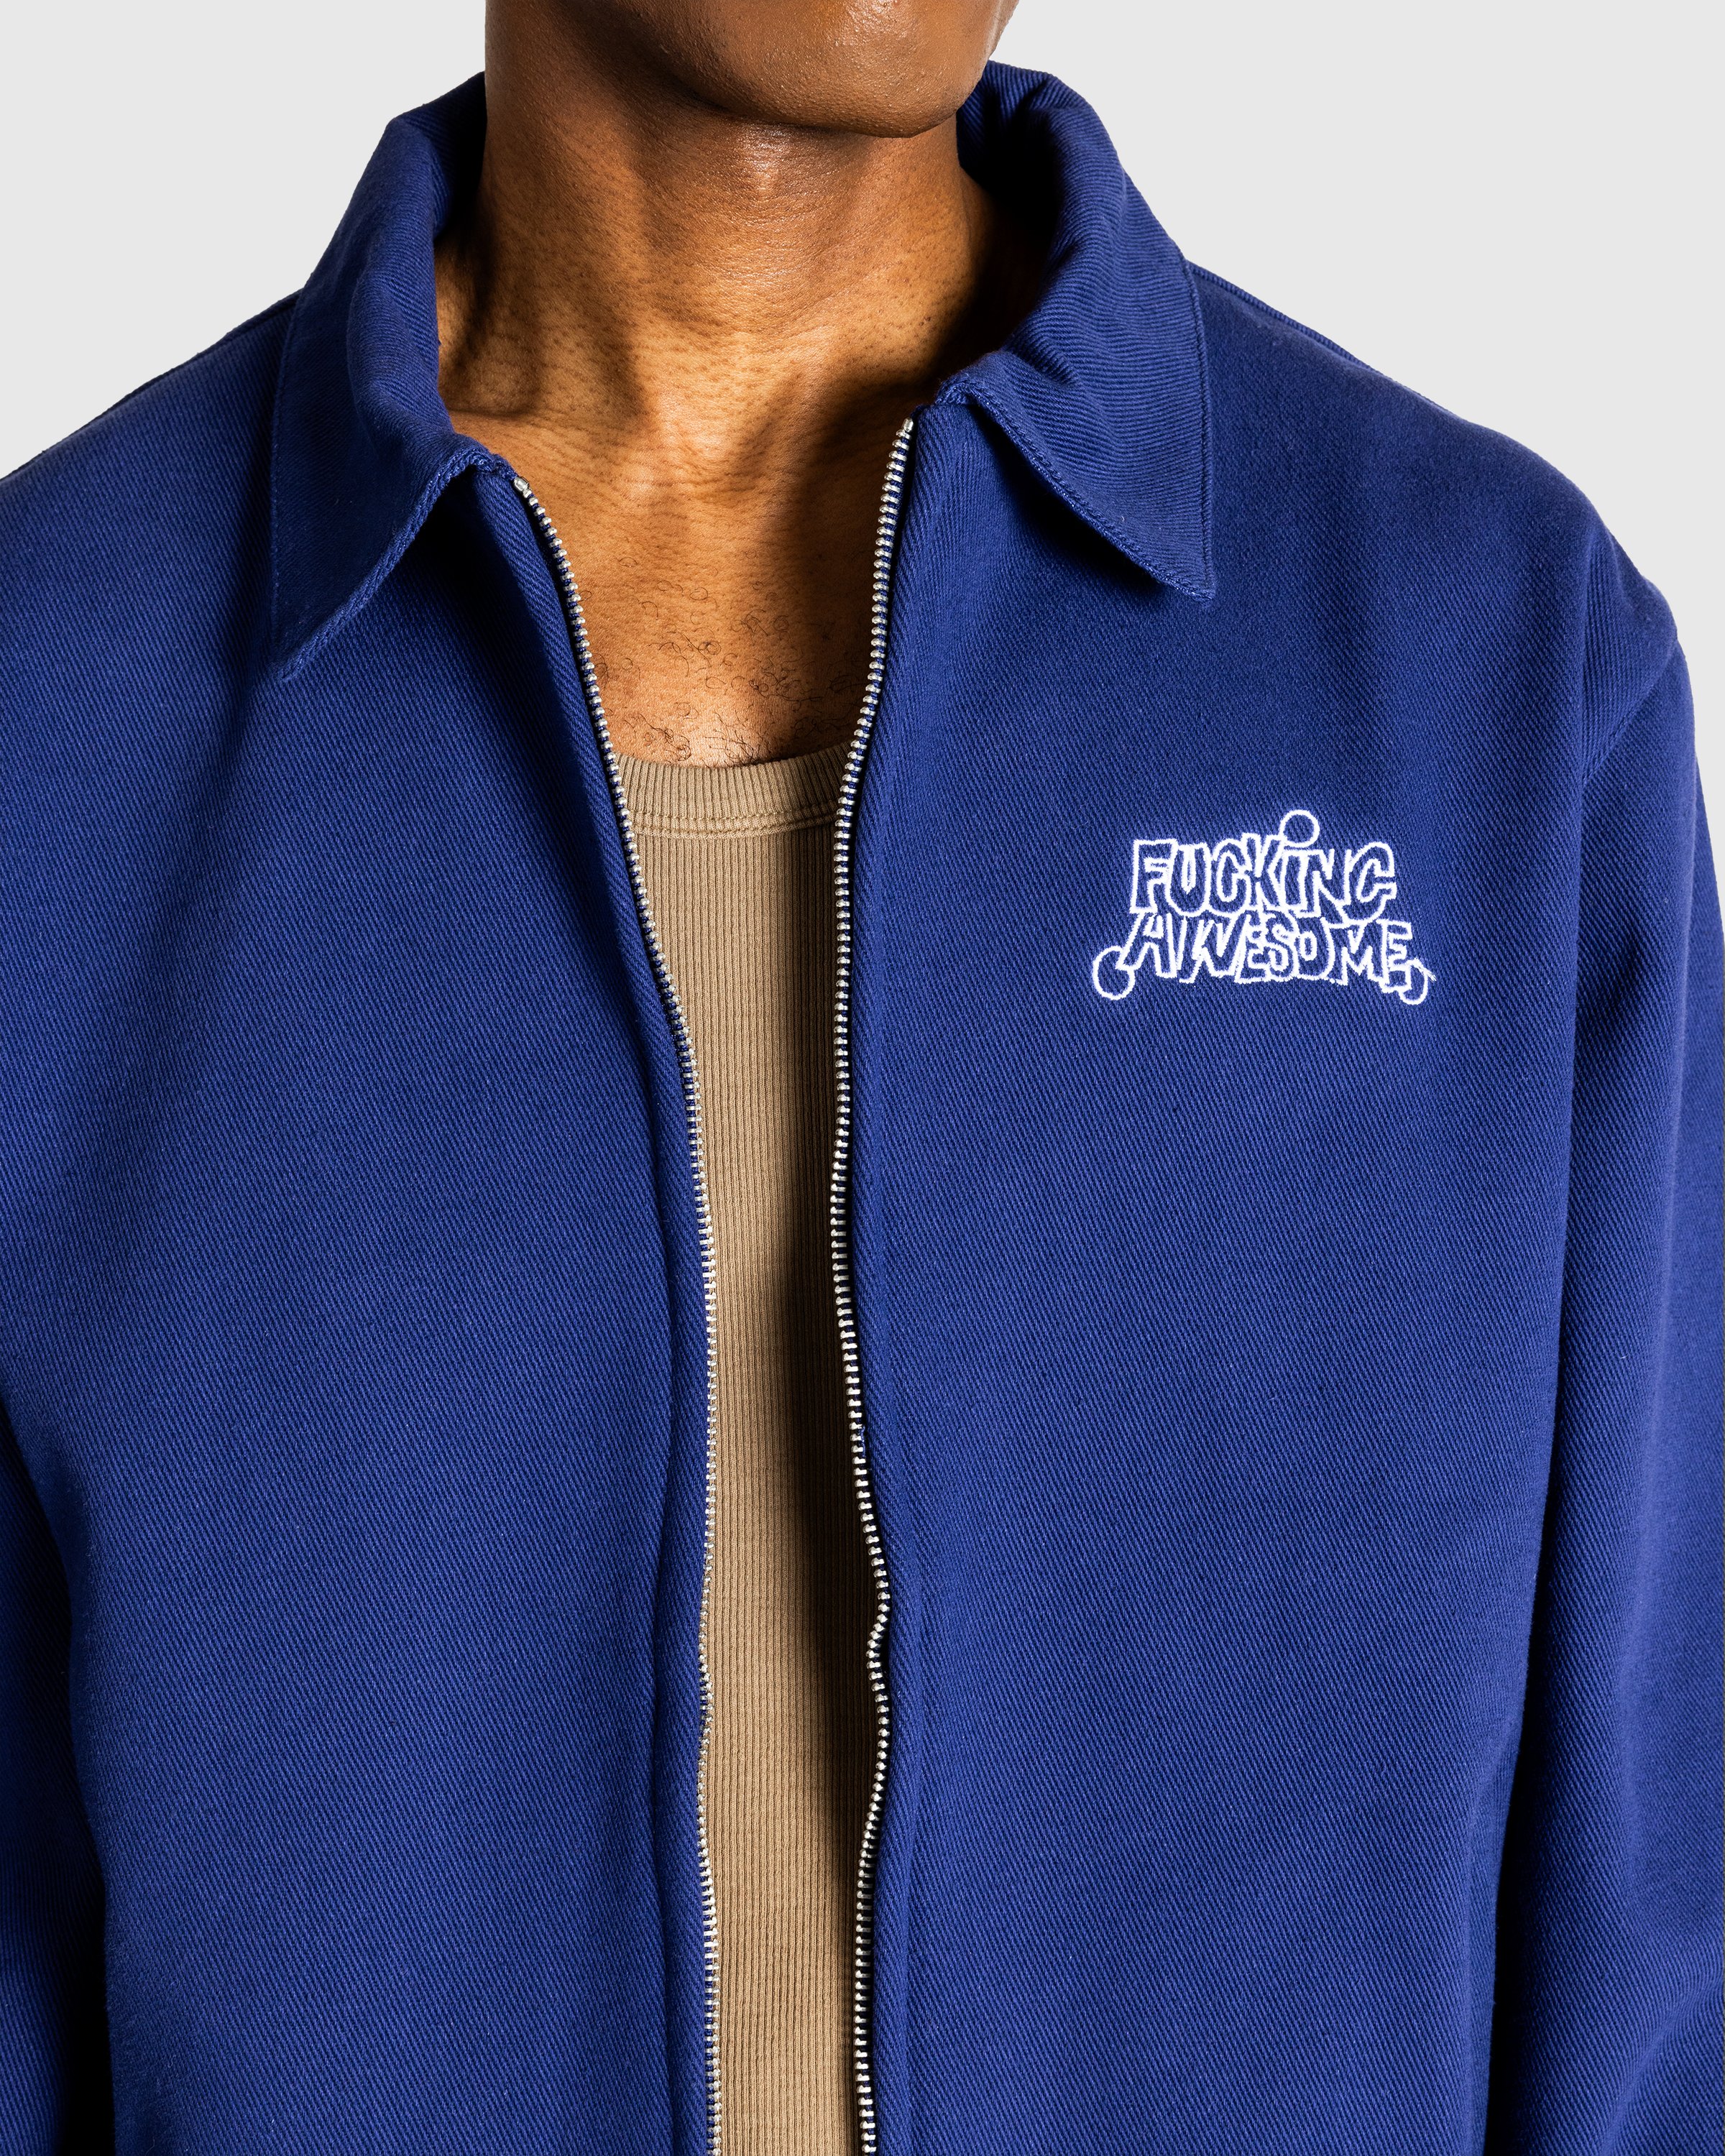 Fucking Awesome - Harrington Jacket Navy - Clothing - Blue - Image 5